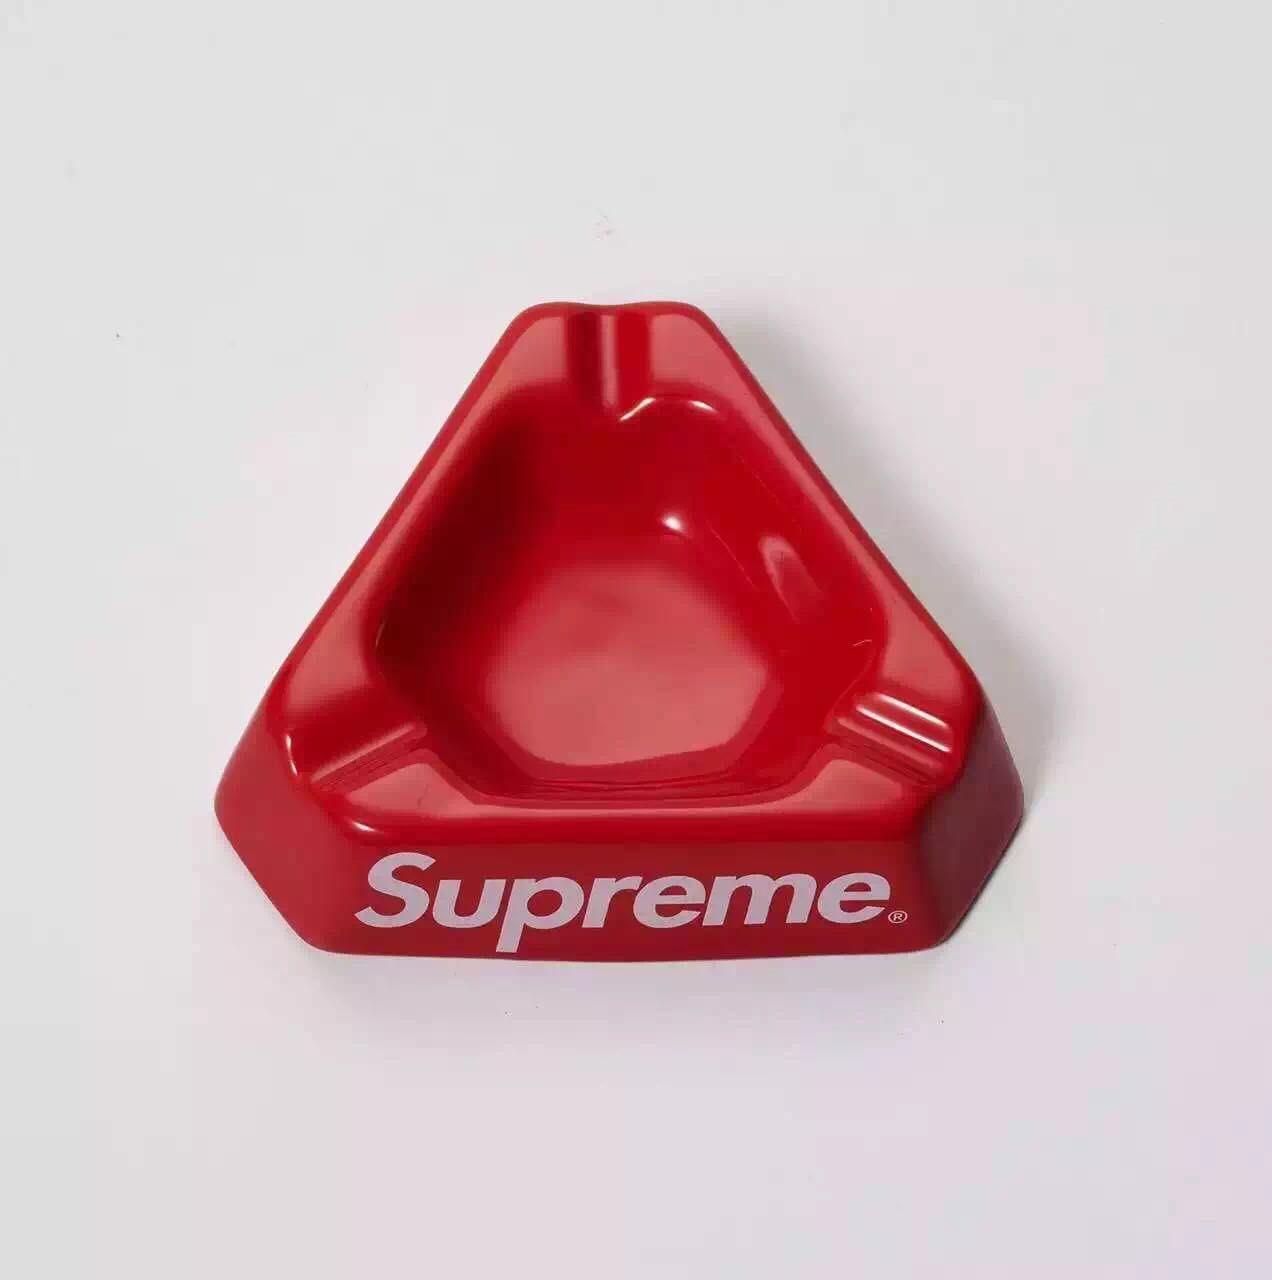 White Triangle in Red Box Logo - USD 15.58 Spot Supreme 15fw Ceramic Ashtray ceramic ashtray BOX